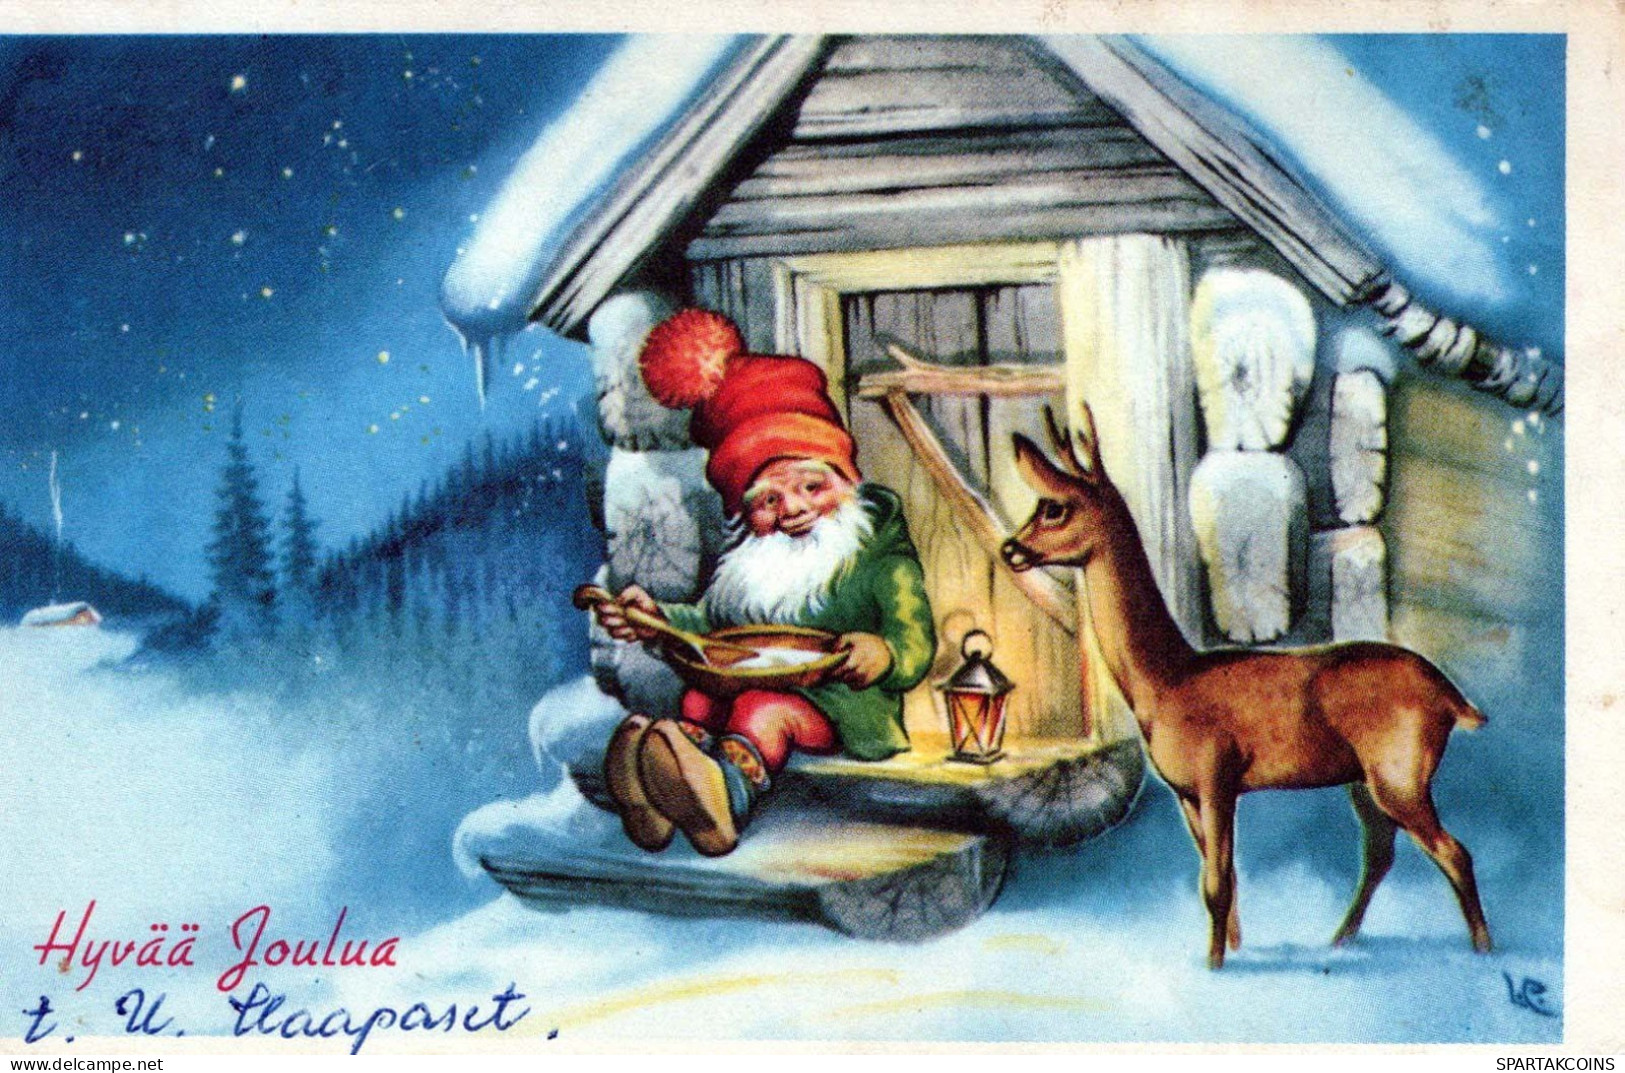 WEIHNACHTSMANN SANTA CLAUS Neujahr Weihnachten Vintage Ansichtskarte Postkarte CPSMPF #PKG337.DE - Santa Claus